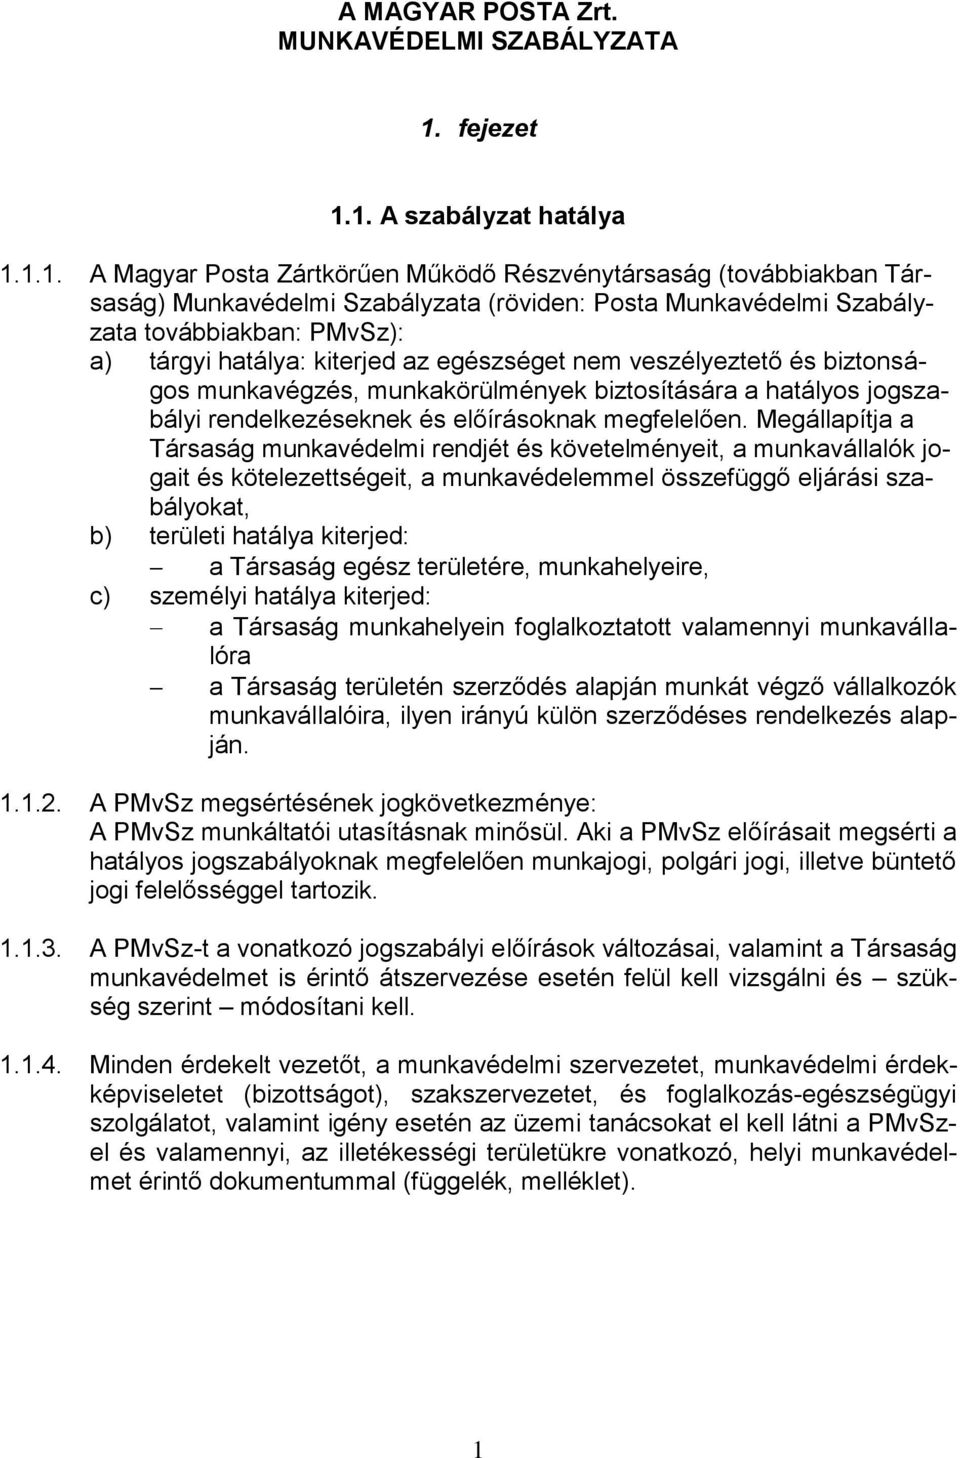 1. A szabályzat hatálya 1.1.1. A Magyar Posta Zártkörűen Működő Részvénytársaság (továbbiakban Társaság) Munkavédelmi Szabályzata (röviden: Posta Munkavédelmi Szabályzata továbbiakban: PMvSz): a)